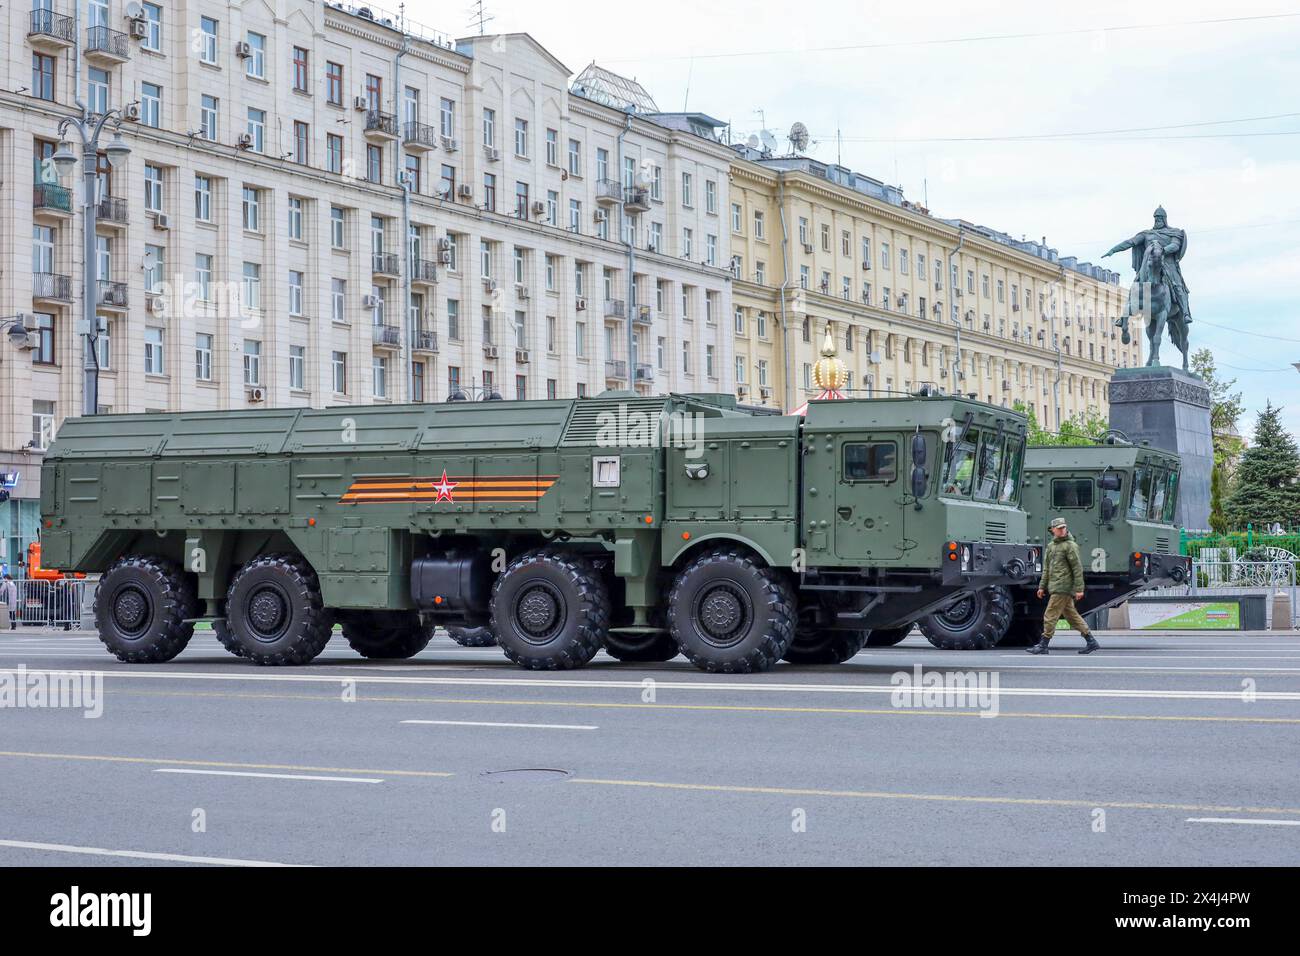 Lanciatore semovente del sistema missilistico Iskander-M, forze militari russe in strada vicino al monumento a Yuri Dolgoruky Foto Stock